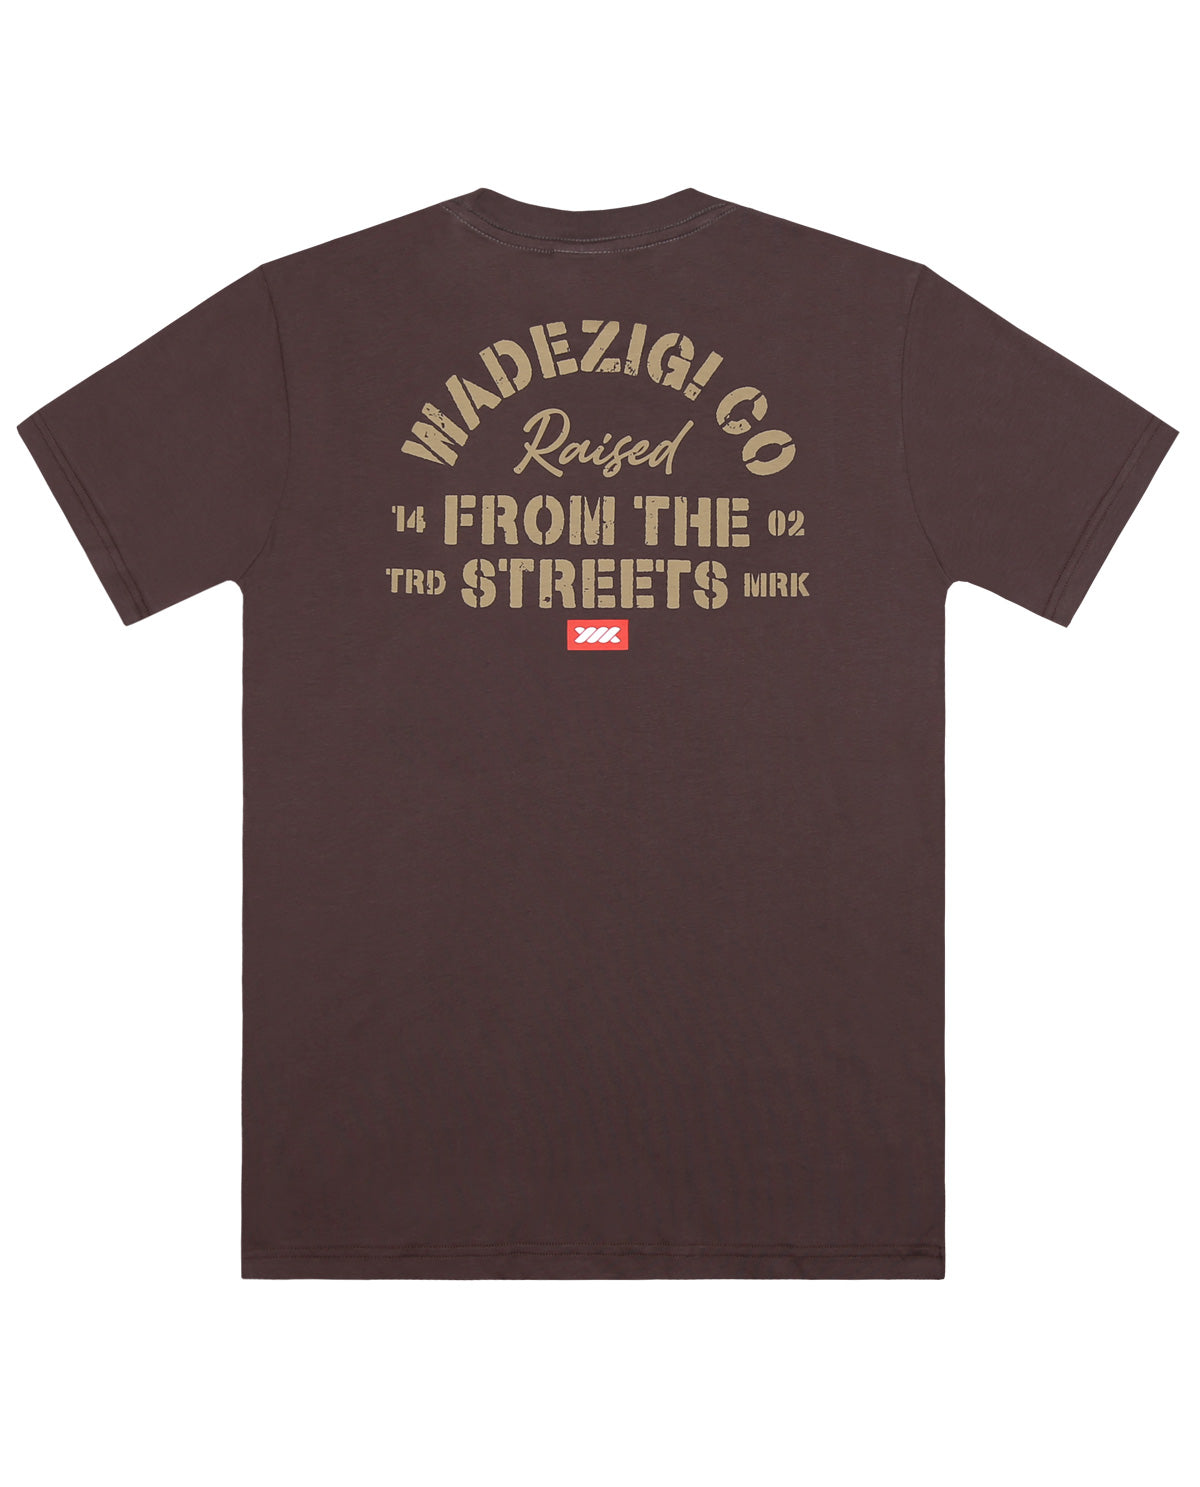 Wadezig! T-Shirt -Raised Brown